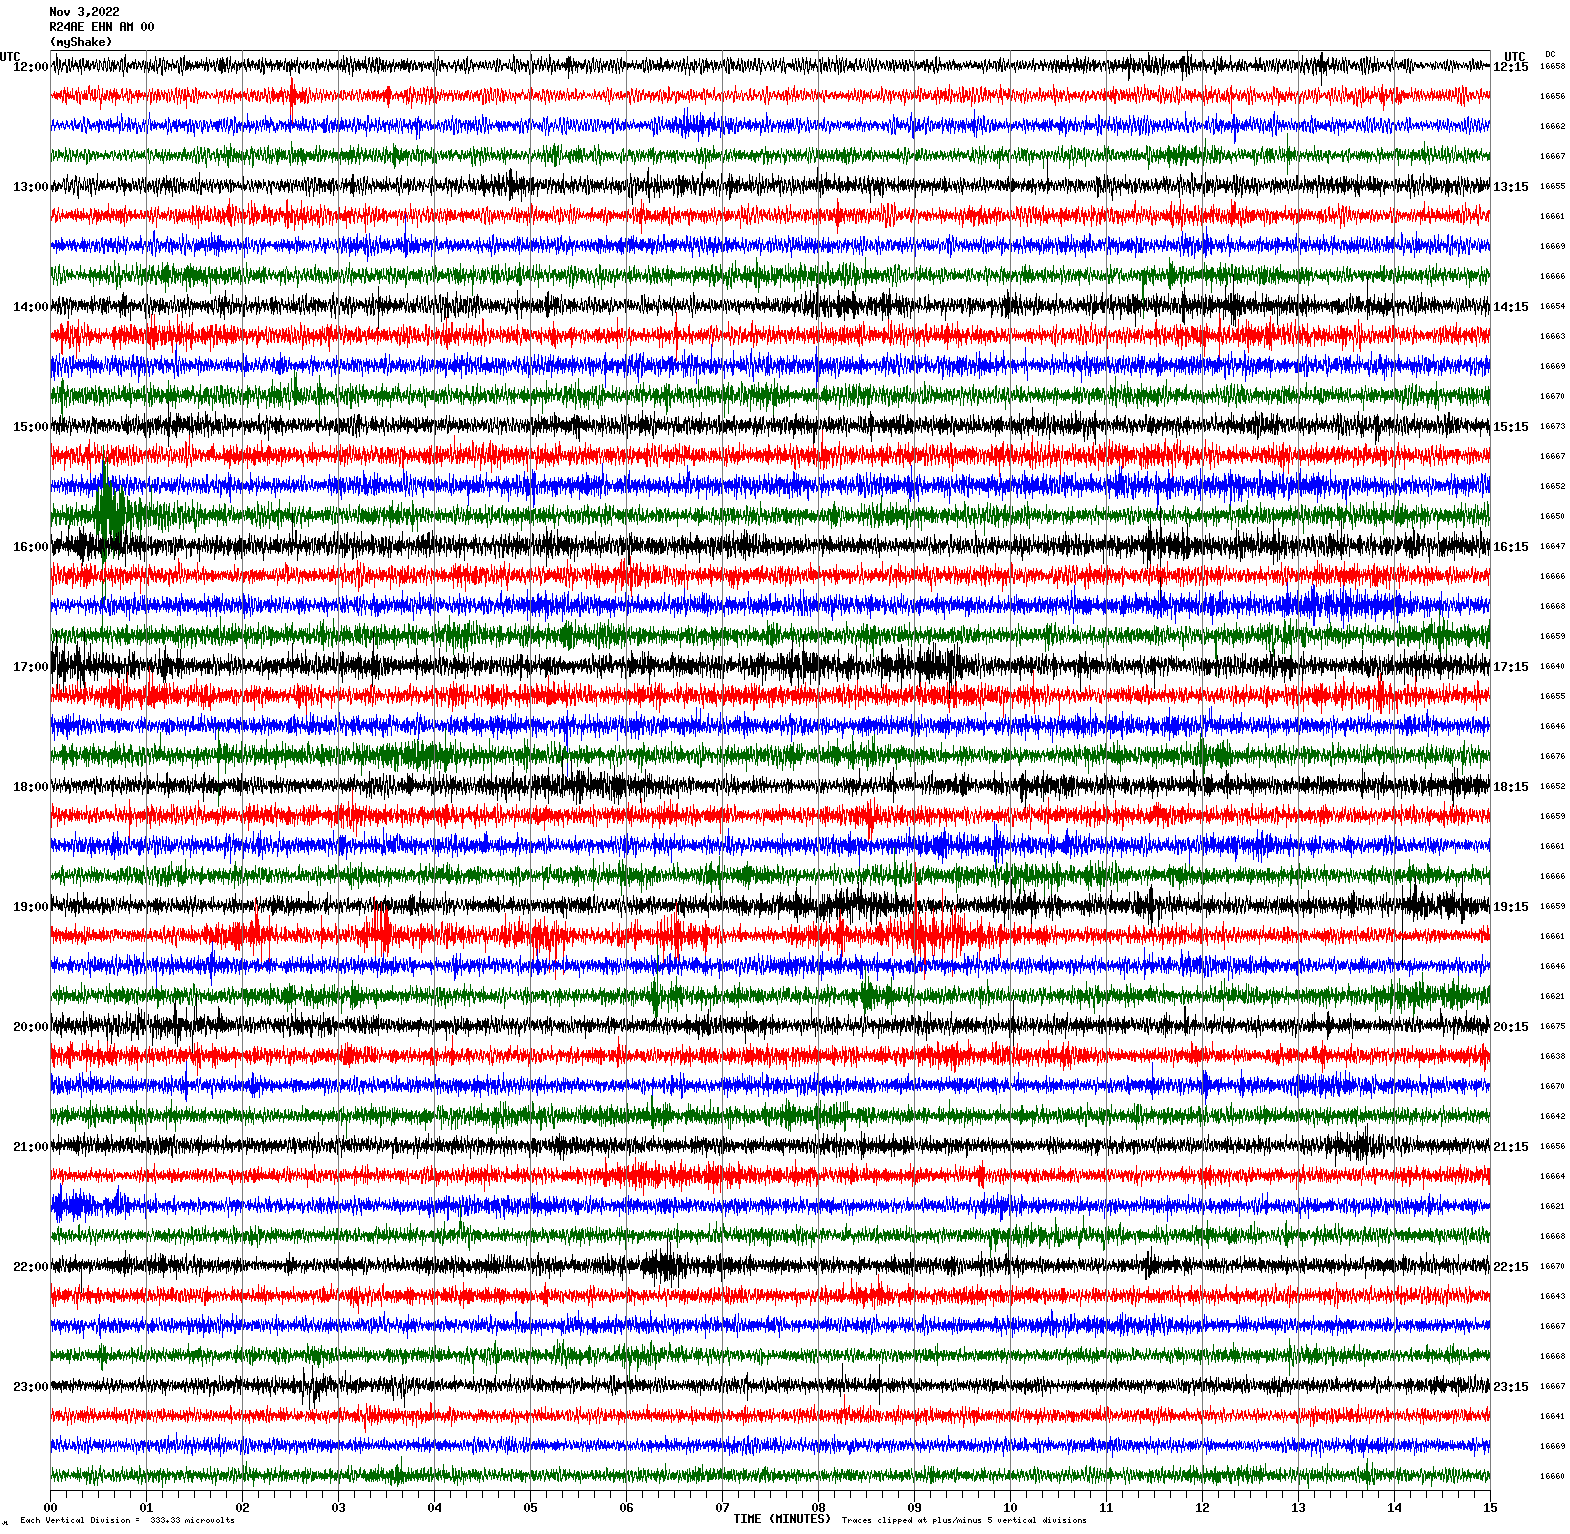 /seismic-data/R24AN/R24AE_EHN_AM_00.2022110312.gif